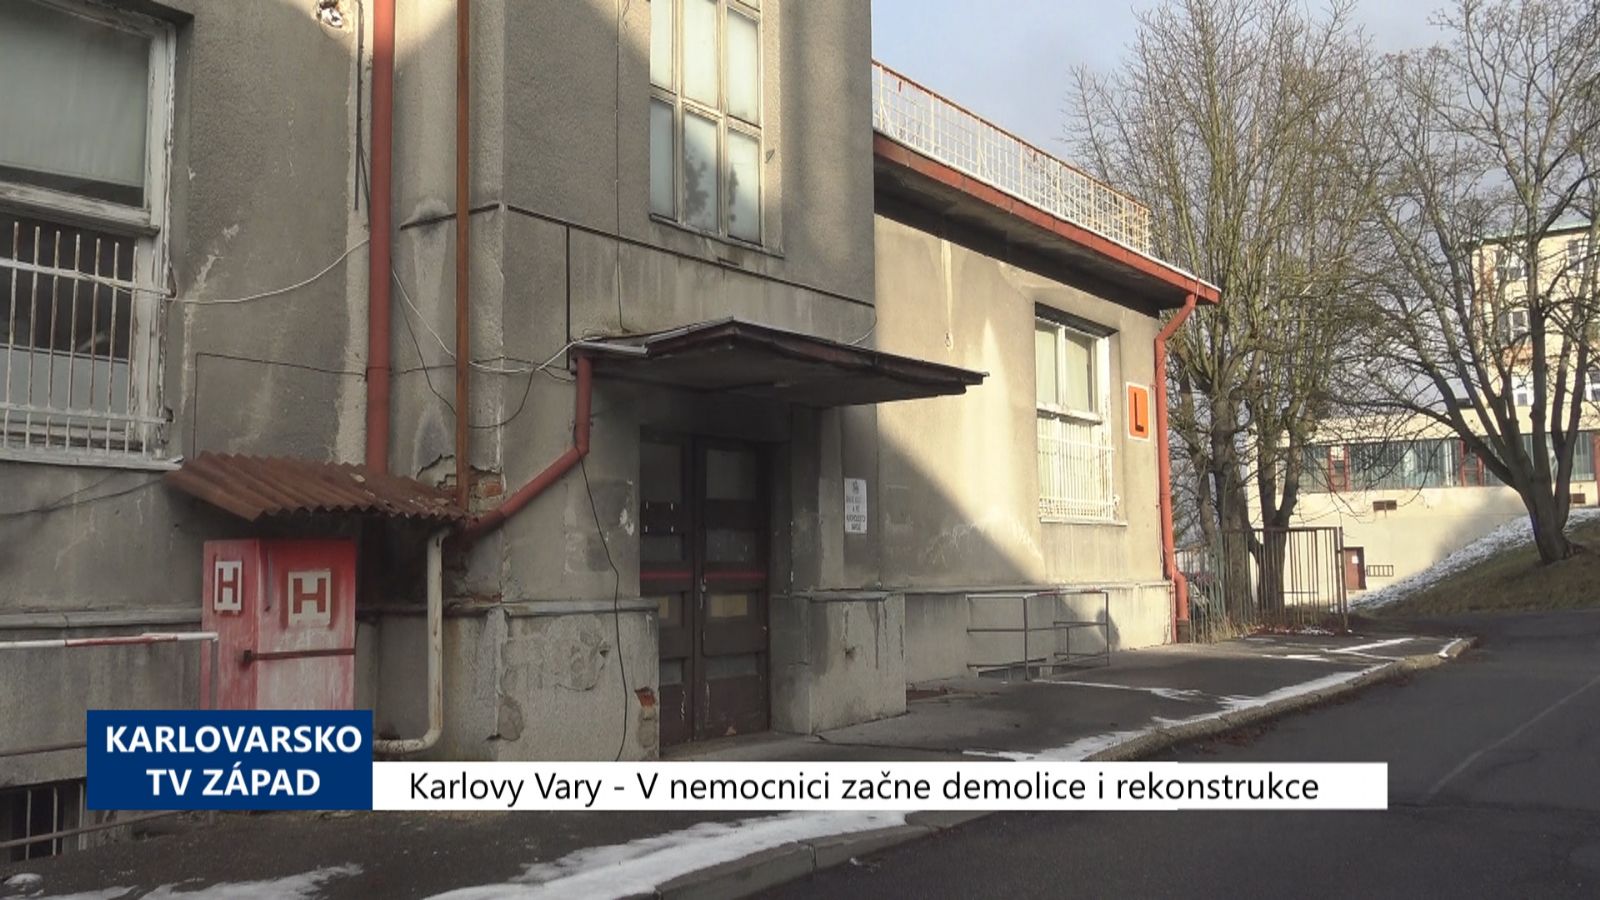 Karlovy Vary: V nemocnici začne demolice i rekonstrukce (TV Západ)